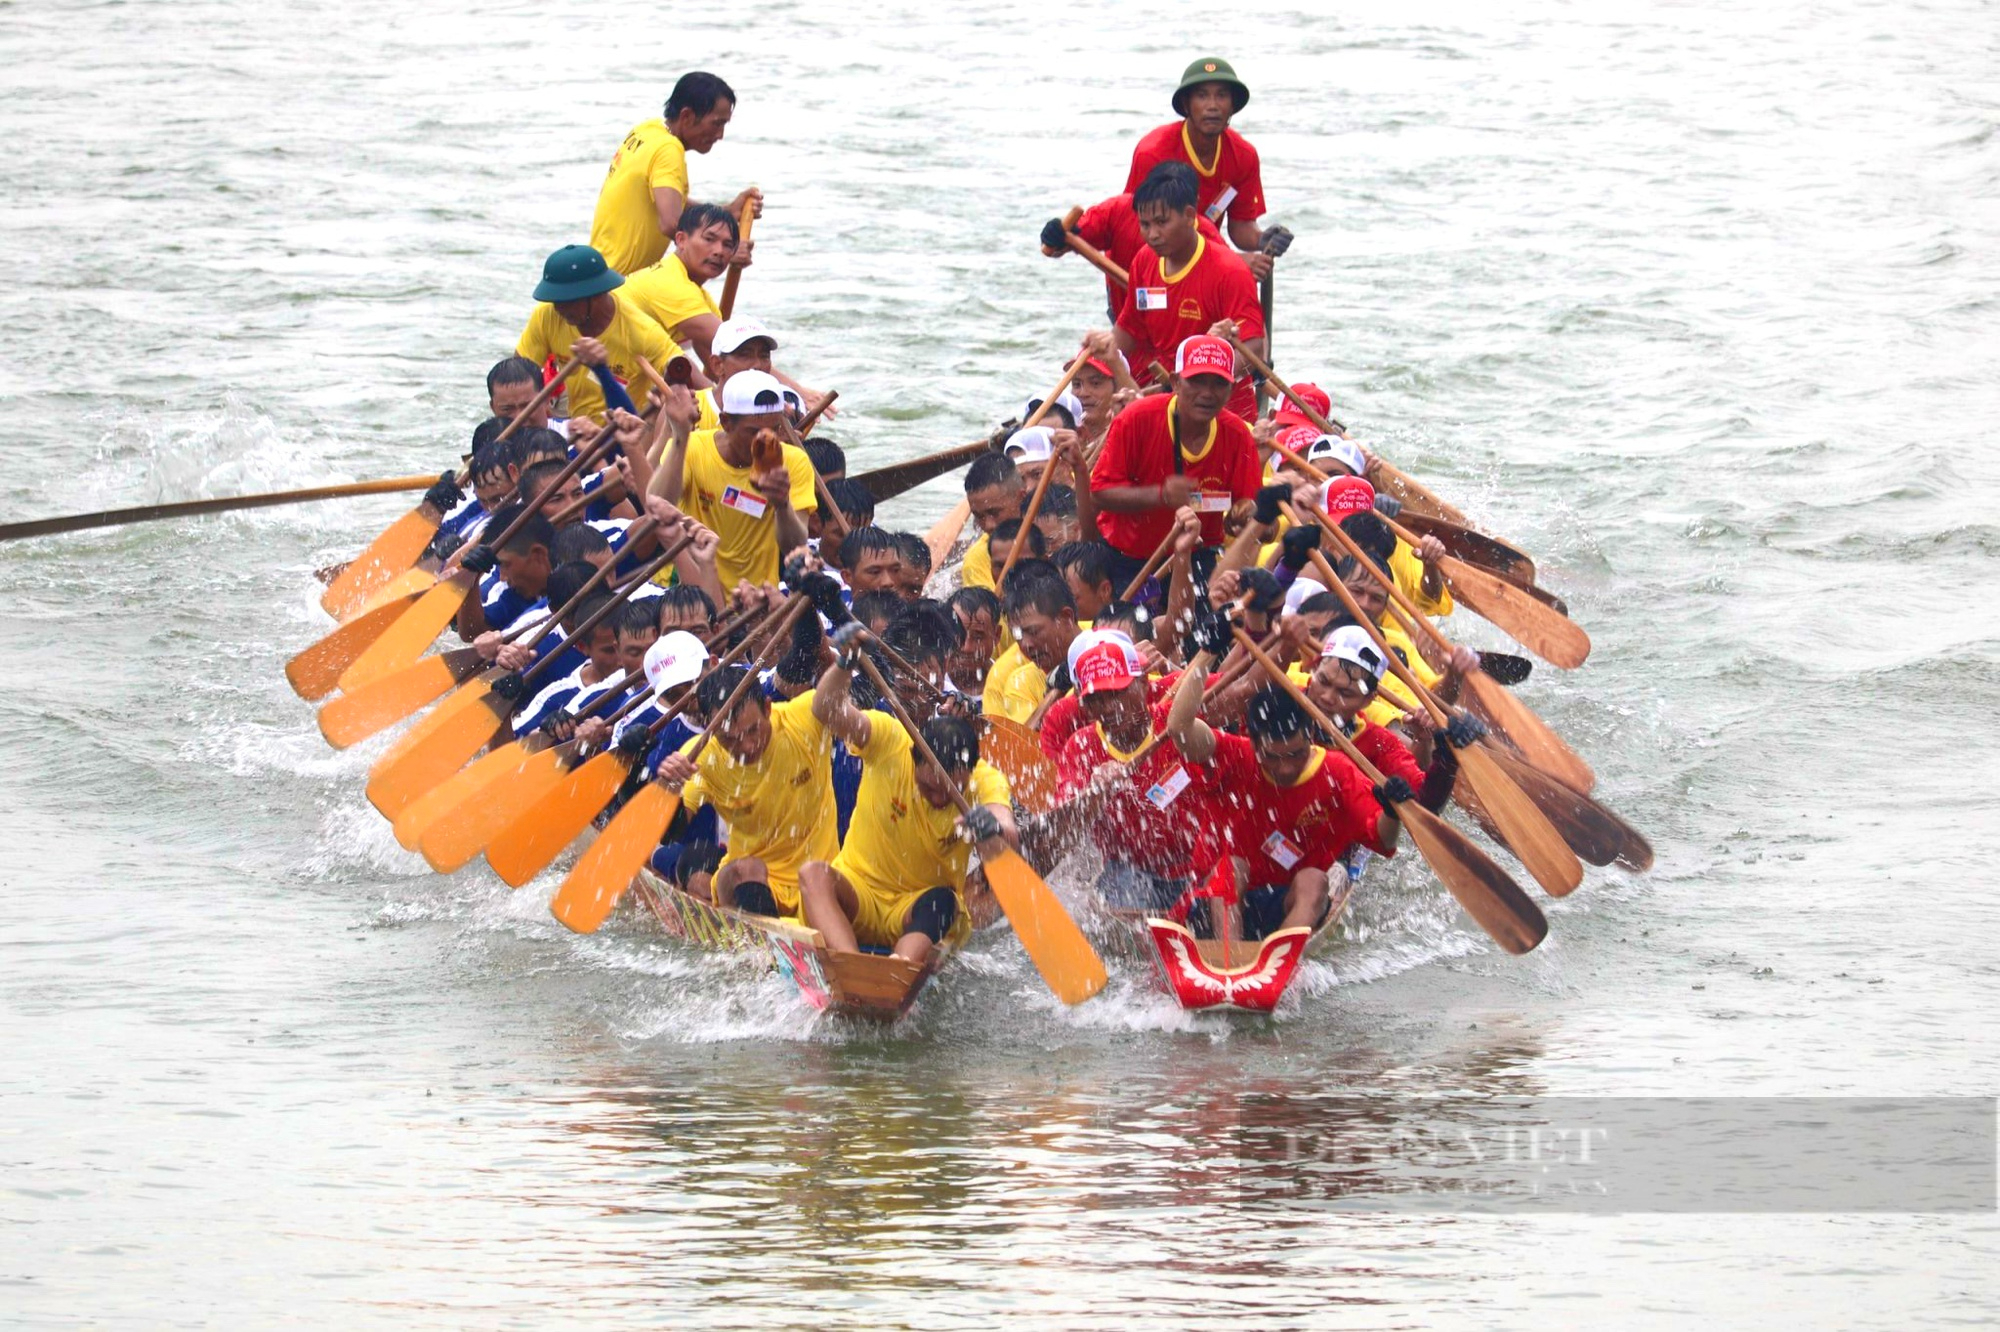 Đua thuyền sông Kiến Giang là một trải nghiệm tuyệt vời không thể bỏ lỡ trong lễ hội. Hãy cùng chiêm ngưỡng những hình ảnh đầy màu sắc và phấn khích này để cảm nhận được bầu không khí sôi động của địa phương.